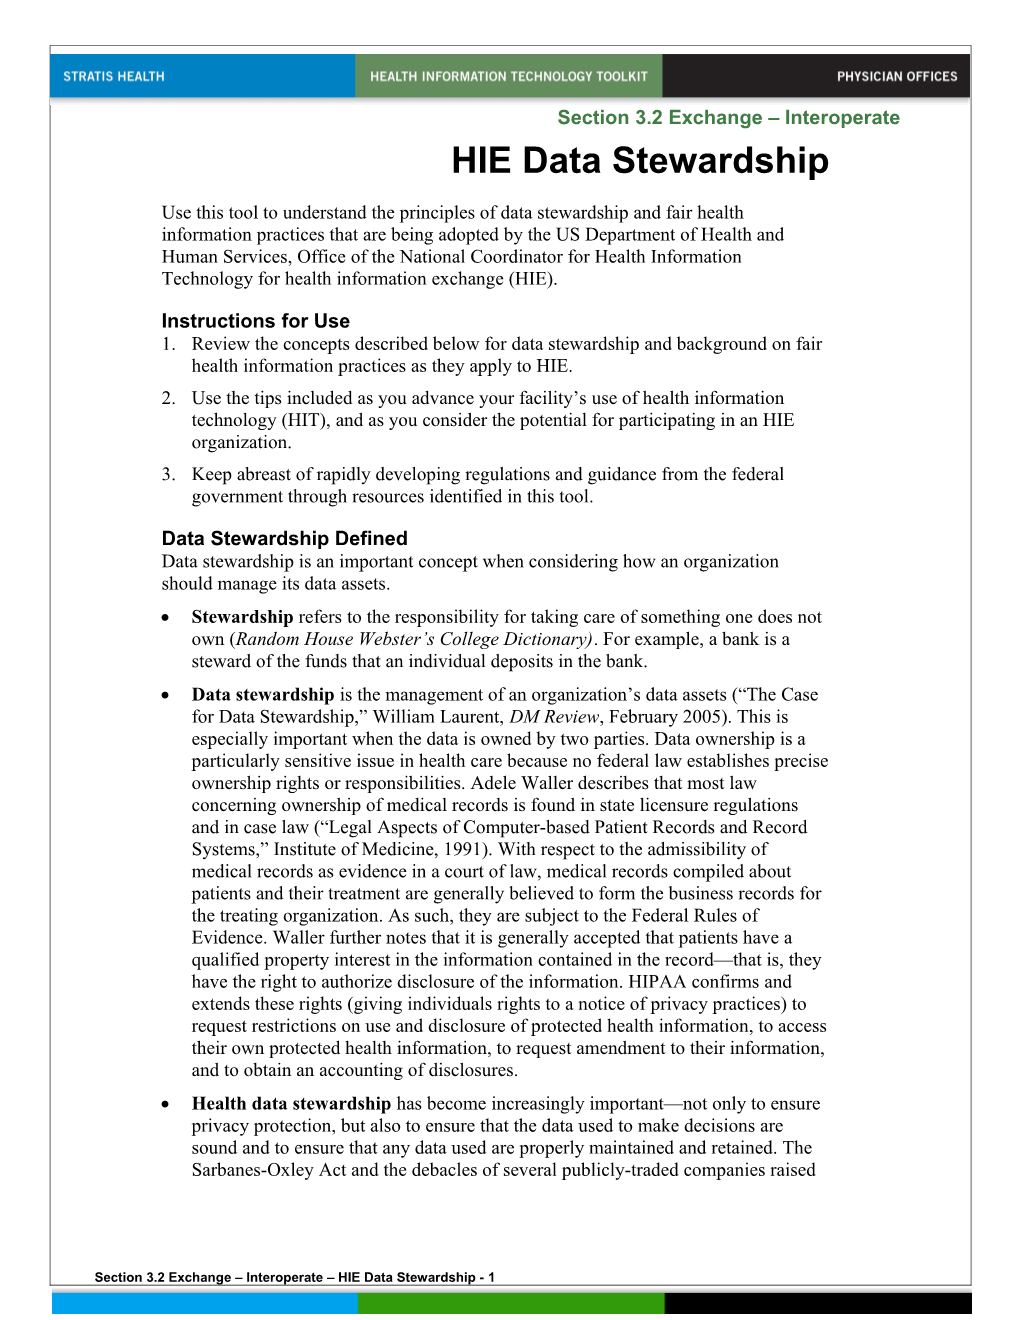 HIE Data Stewardship